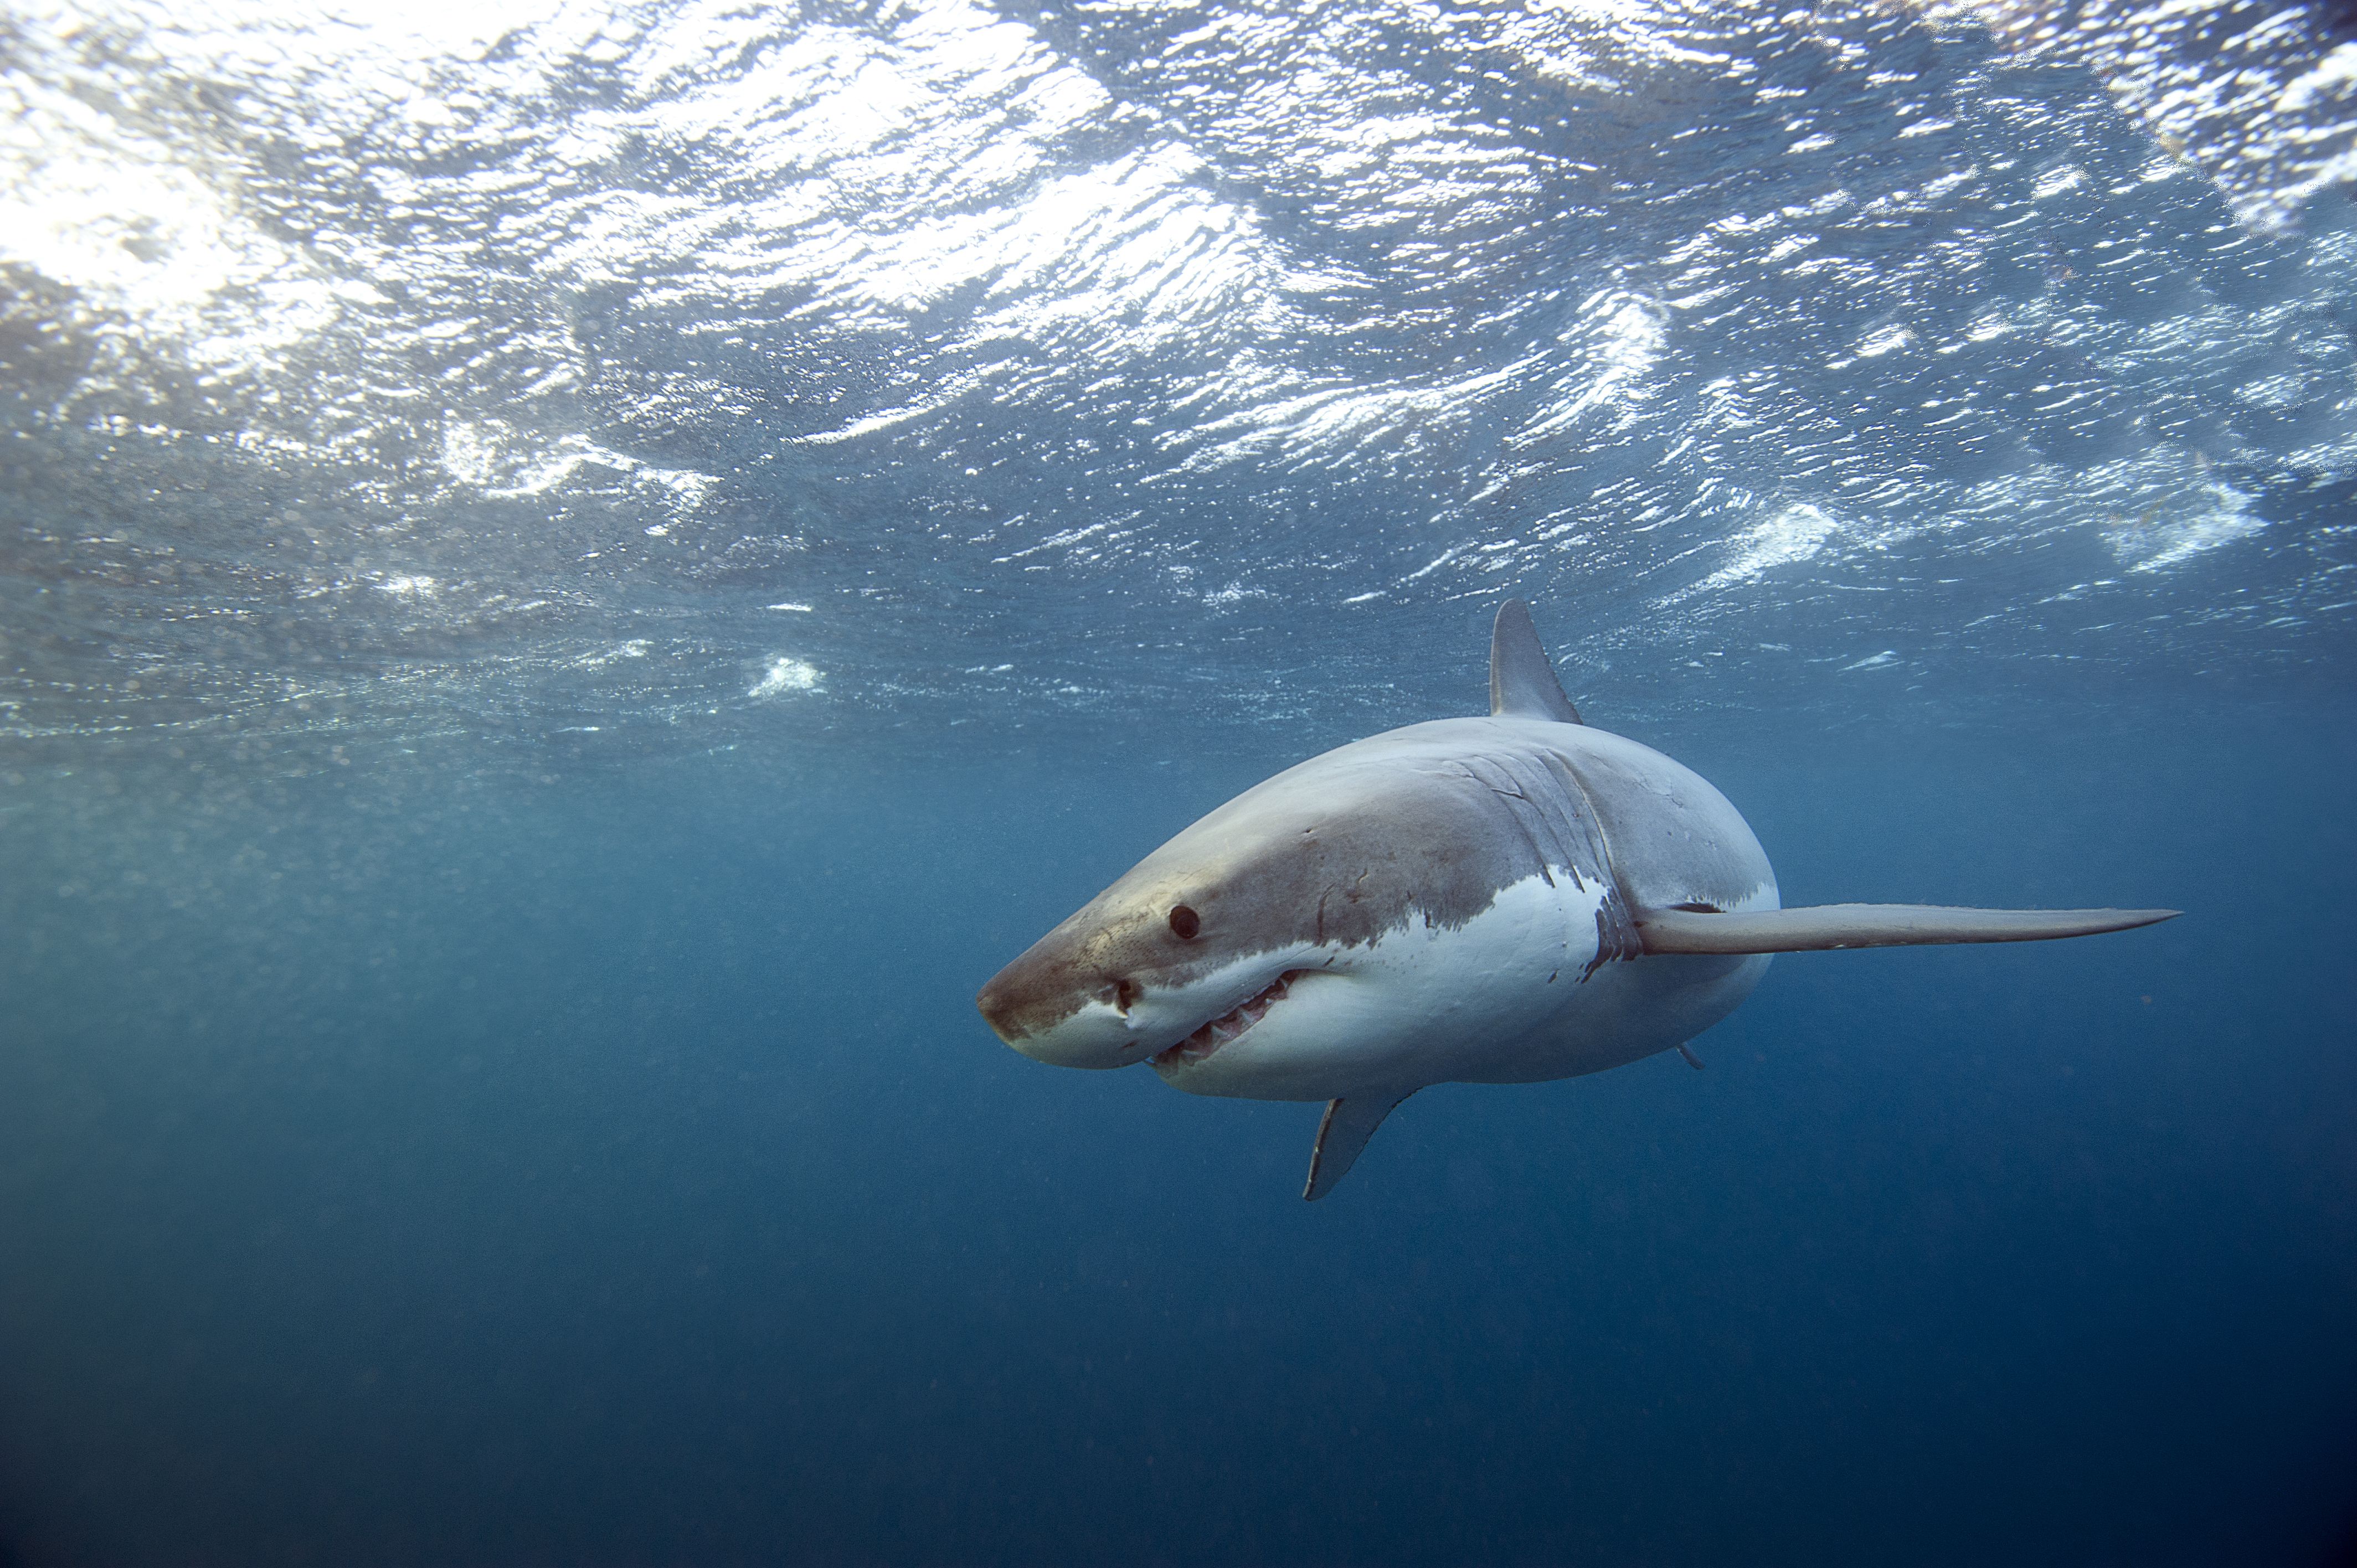 Prohibirán lanzar sangre a las playas para atraer tiburones en Florida